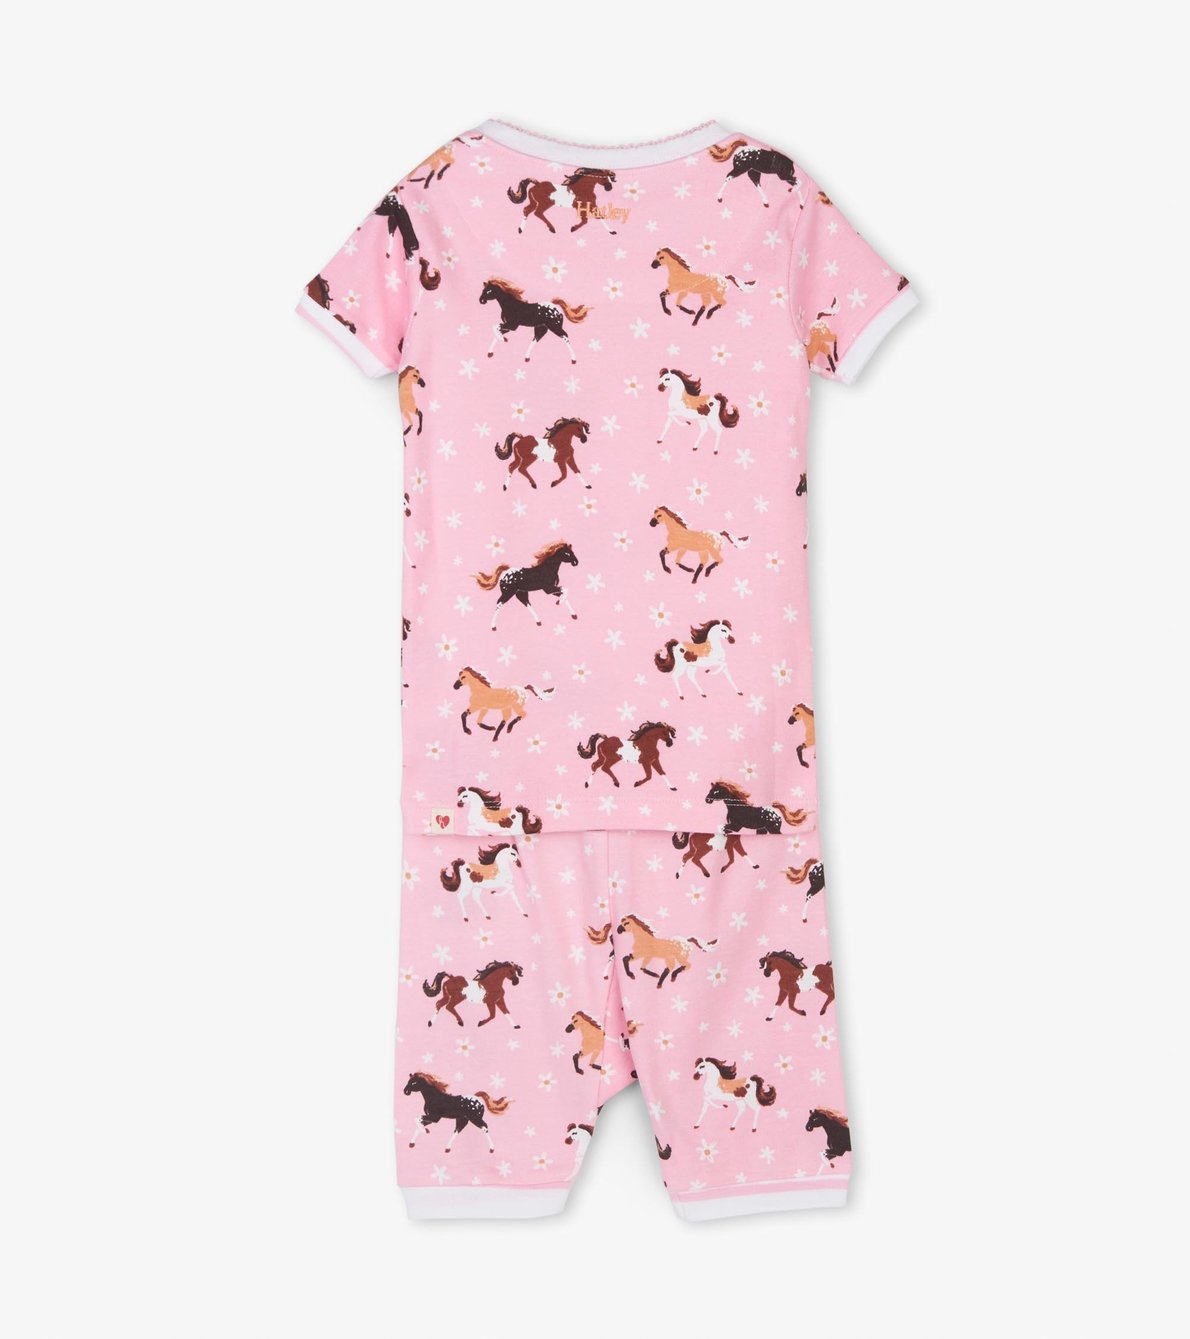 View larger image of Frolicking Horses Organic Cotton Short Pajama Set